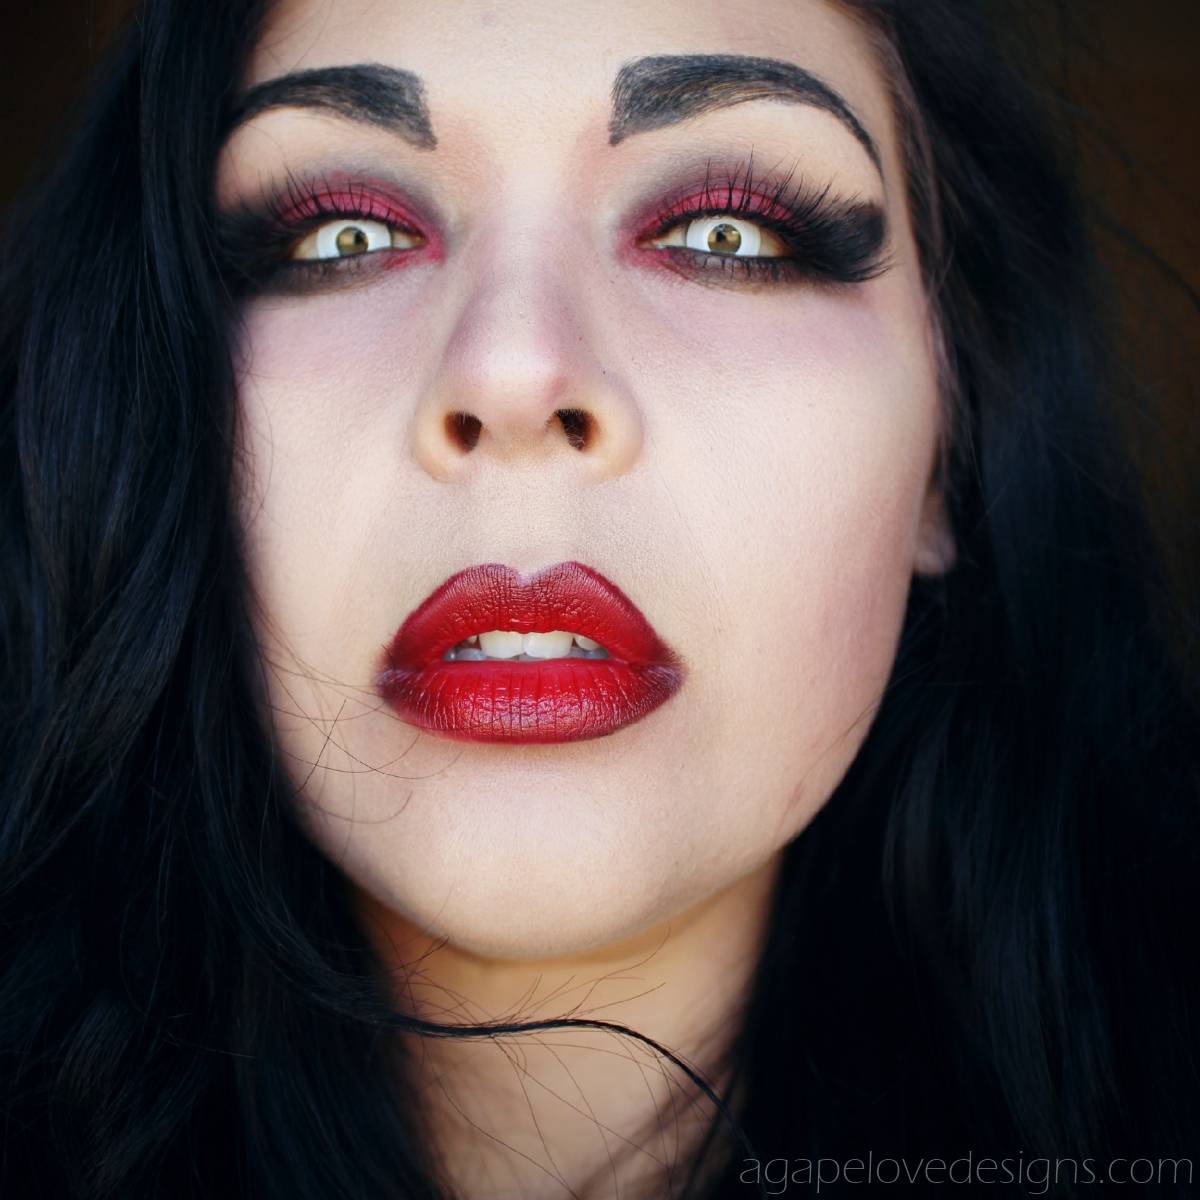 Макияж вампира: пошаговая инструкция нанесения грима на хэллоуин, как сделать образ вампира